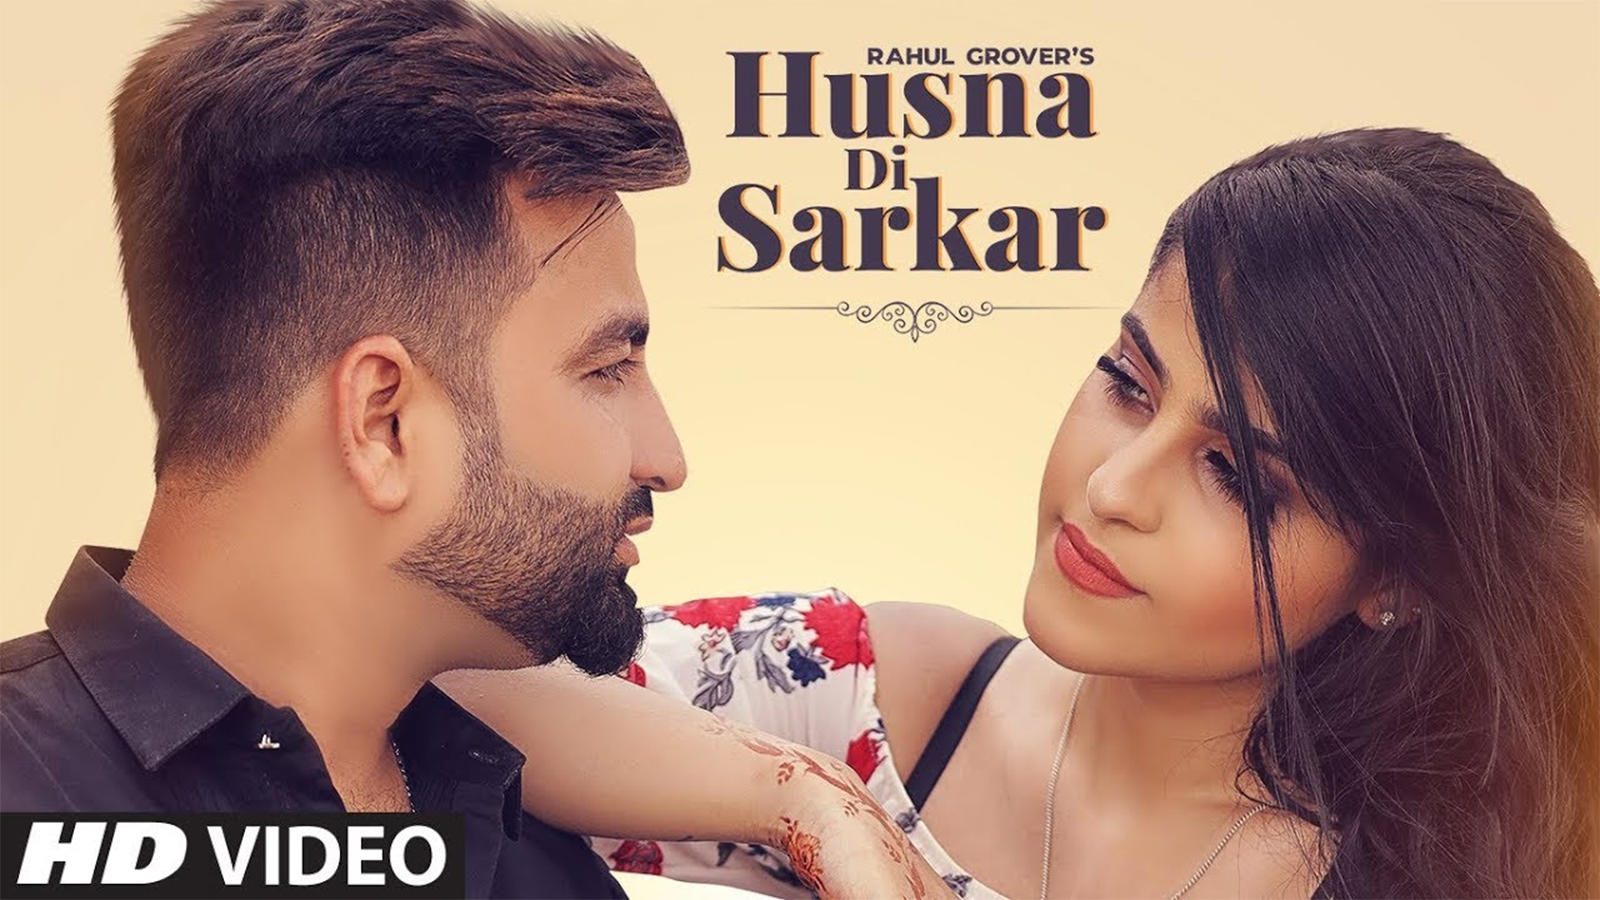 Latest Punjabi Song 'Husna Di Sarkar' Sung By Rahul Grover | Punjabi Video  Songs - Times of India